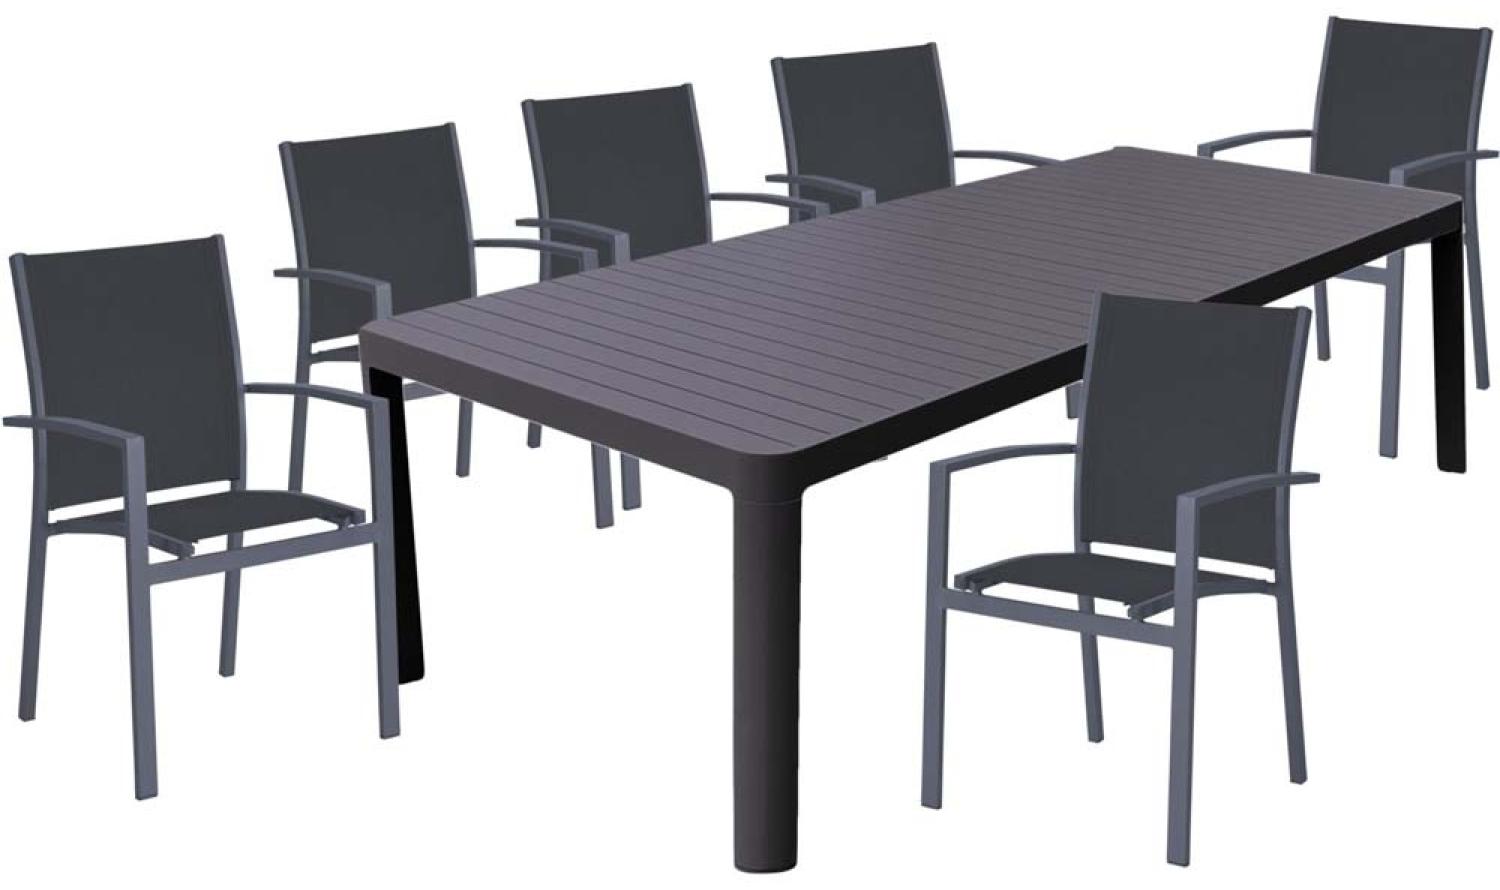 Tischgruppe NEREA, 7 teilig, Aluminium, dunkelgrau Bild 1